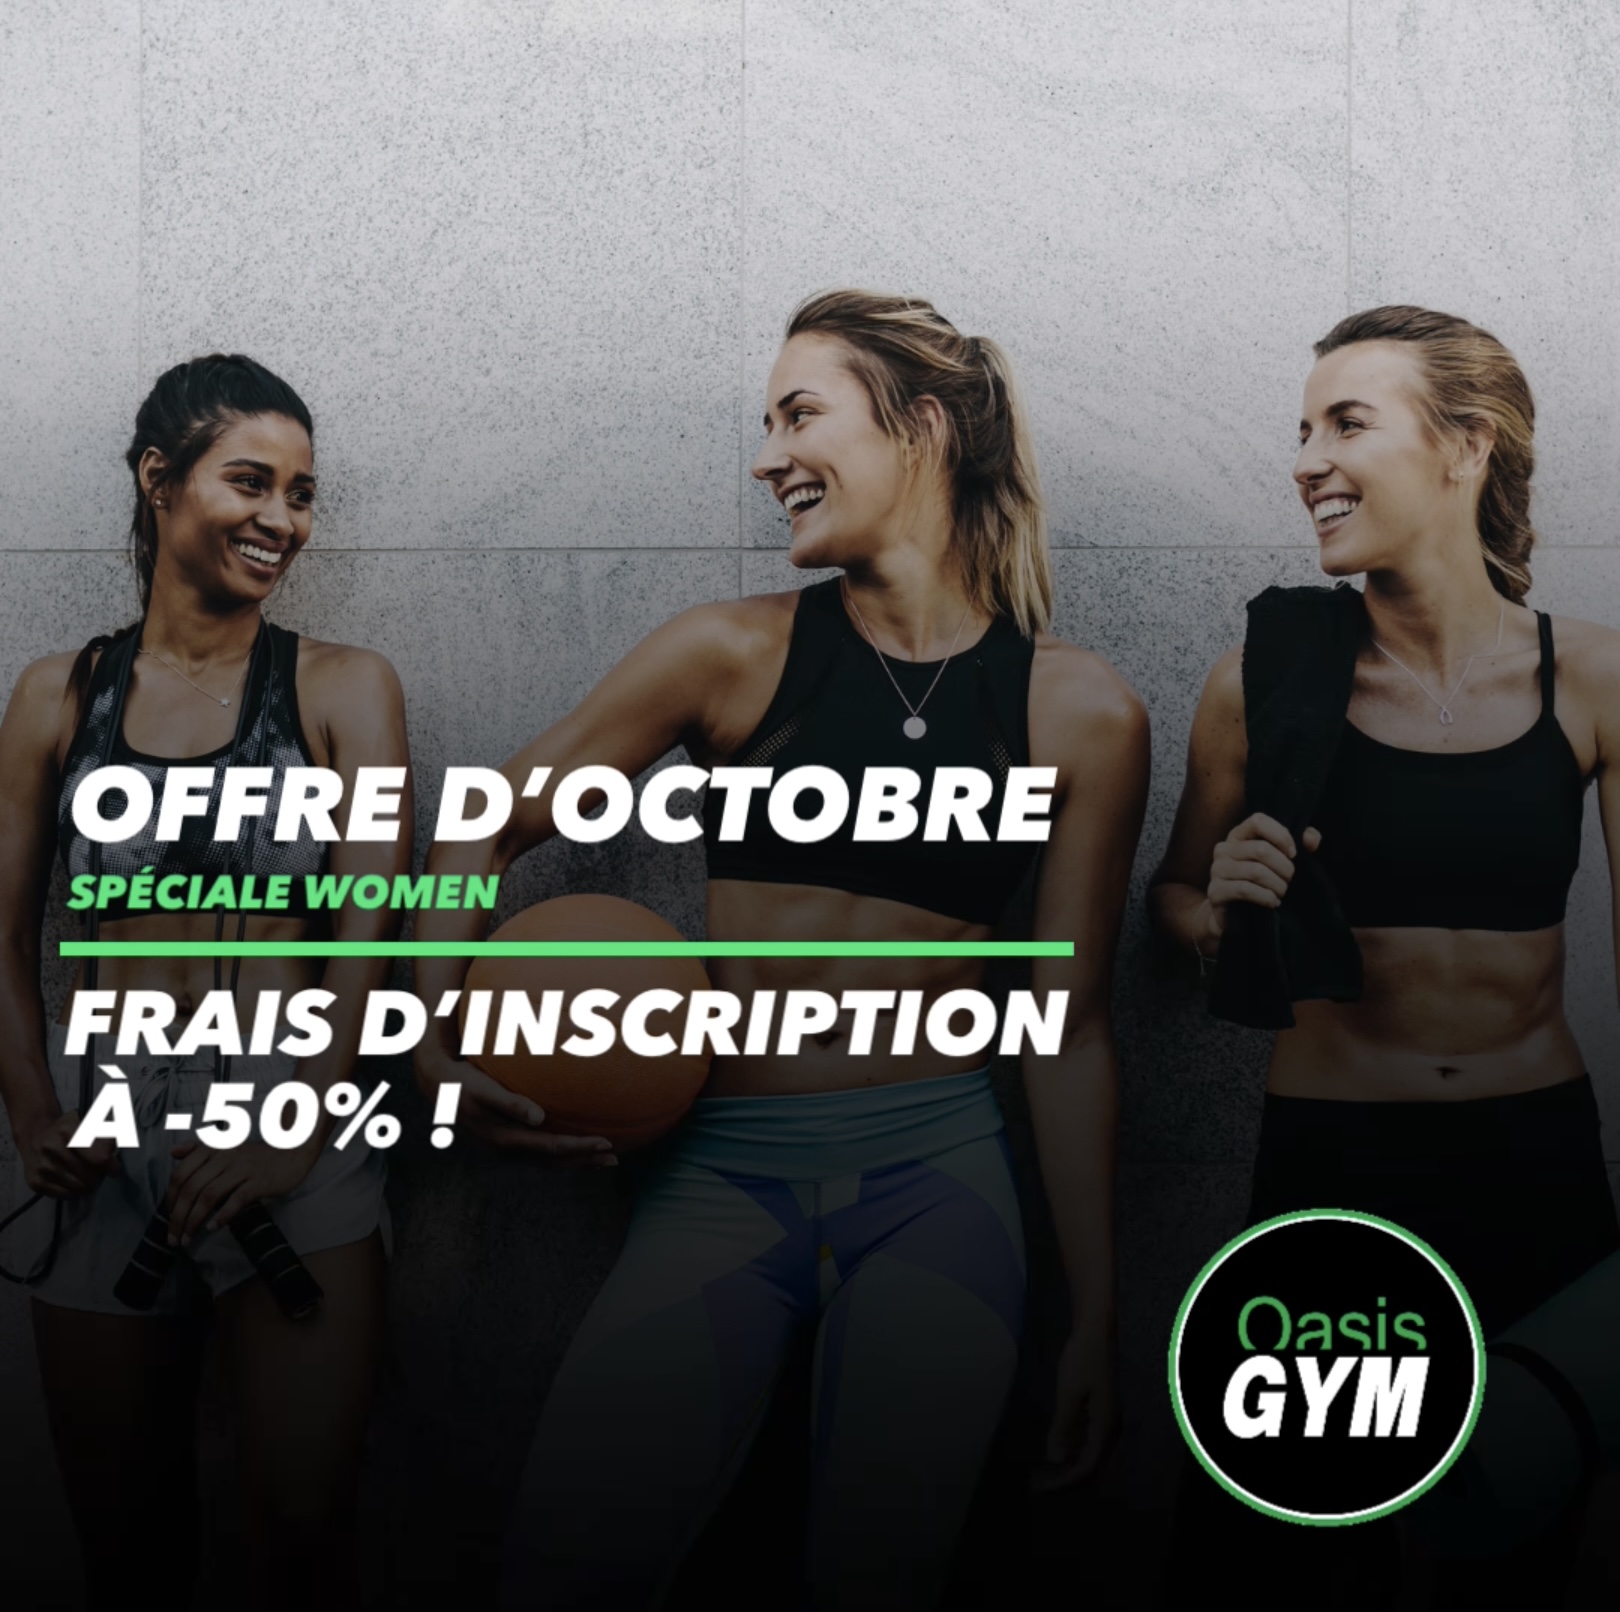 Offre d'octobre spéciale Women Oasis Gym